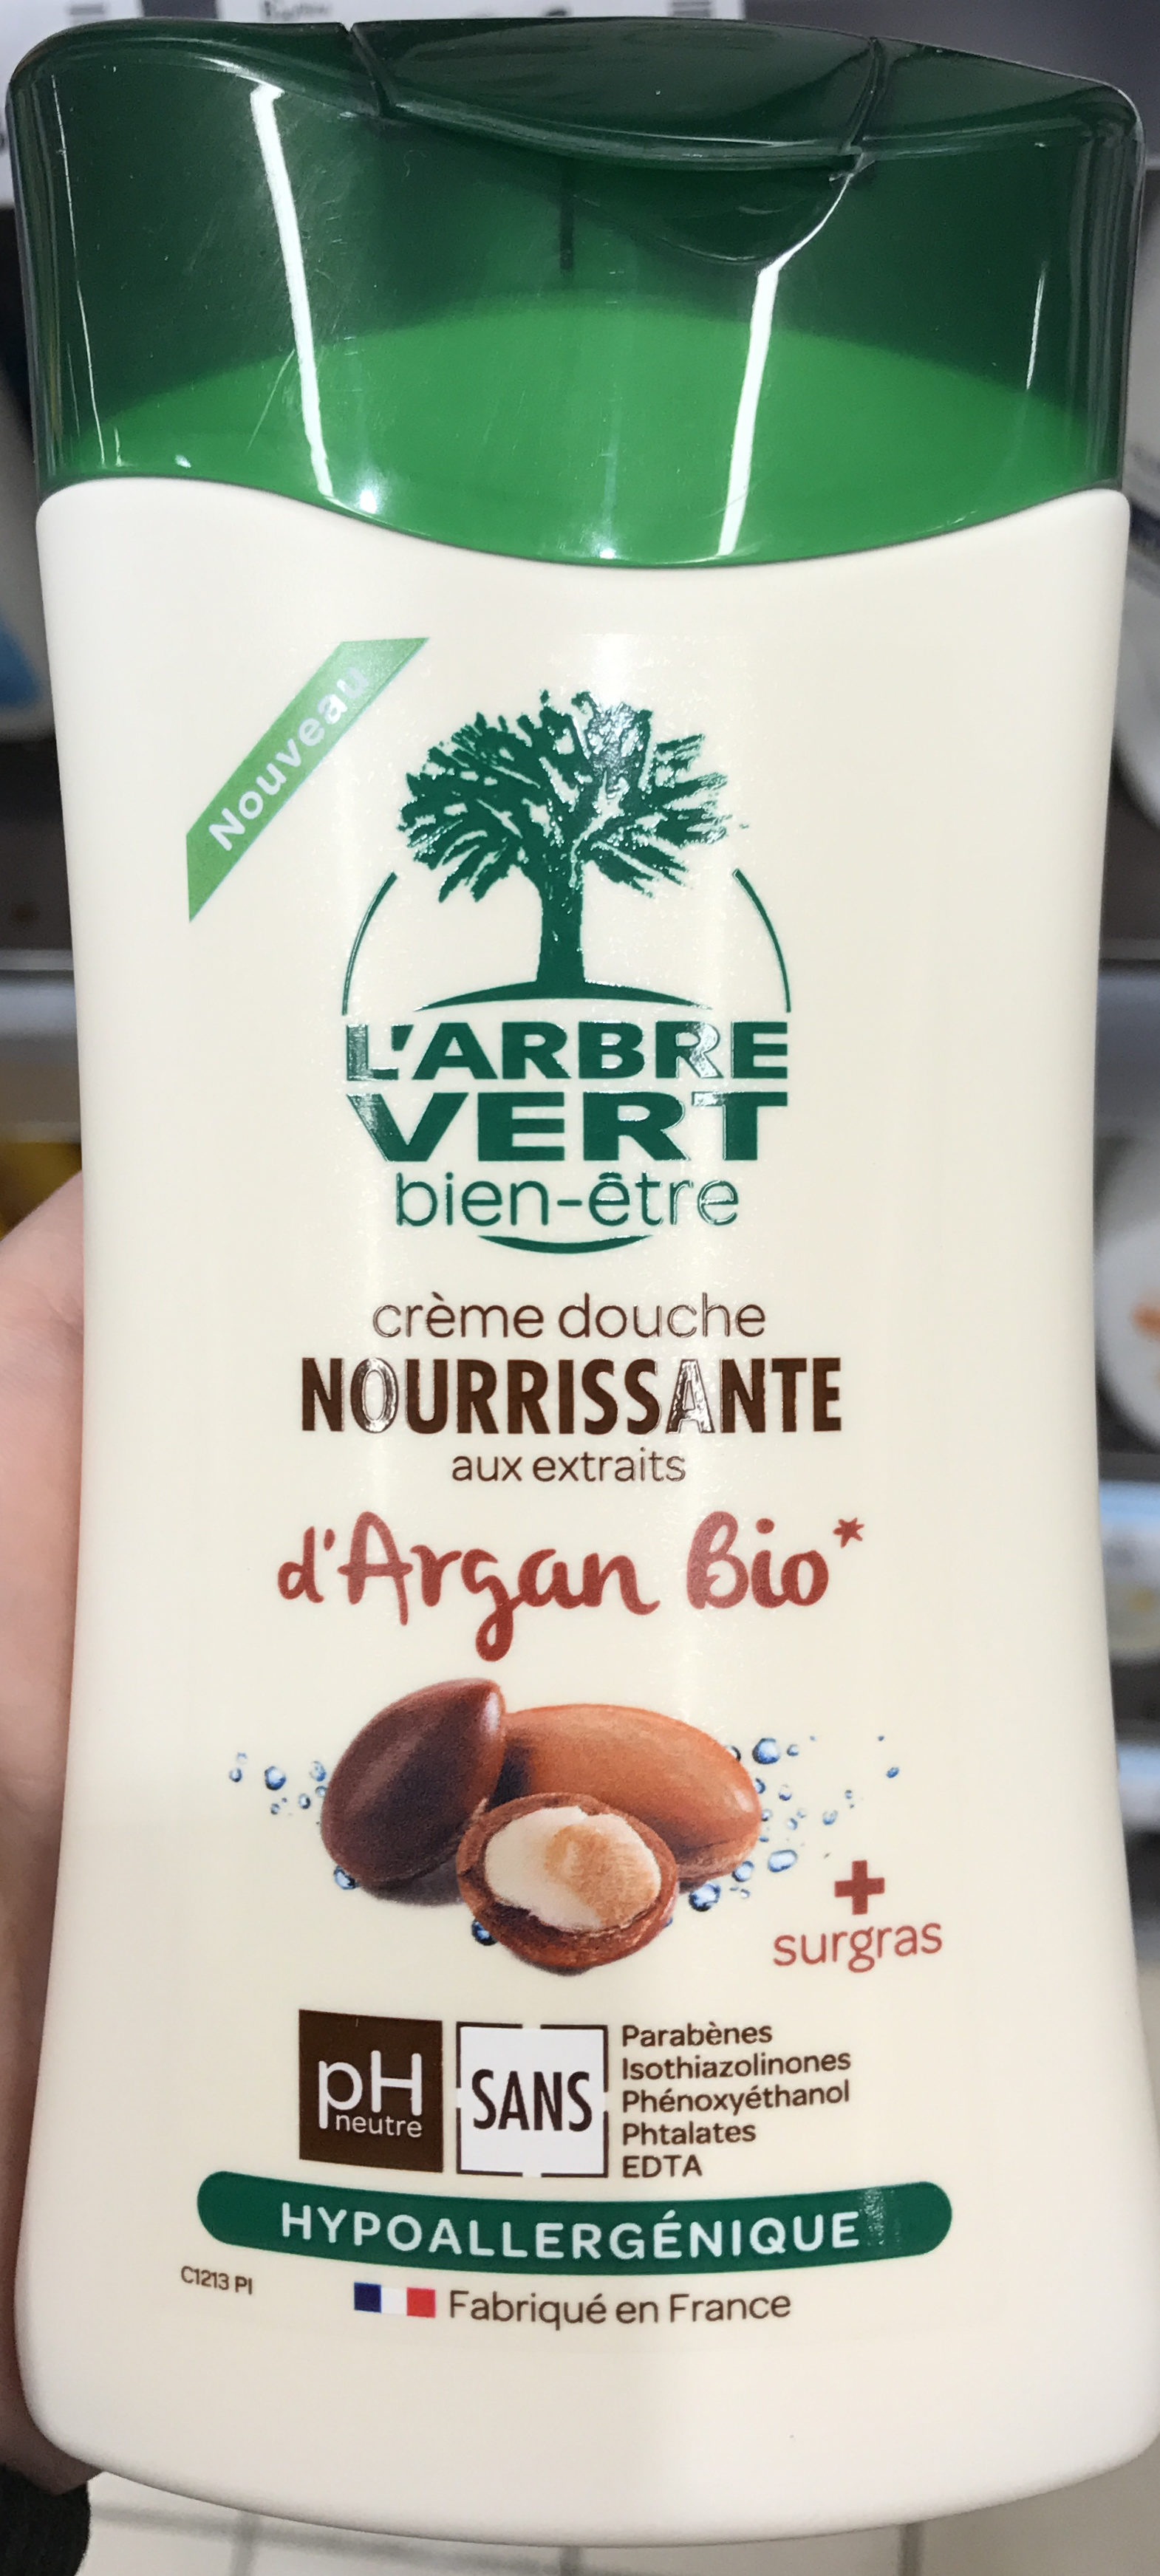 Crème douche Nourissante aux extraits d'Argan bio - Produit - fr